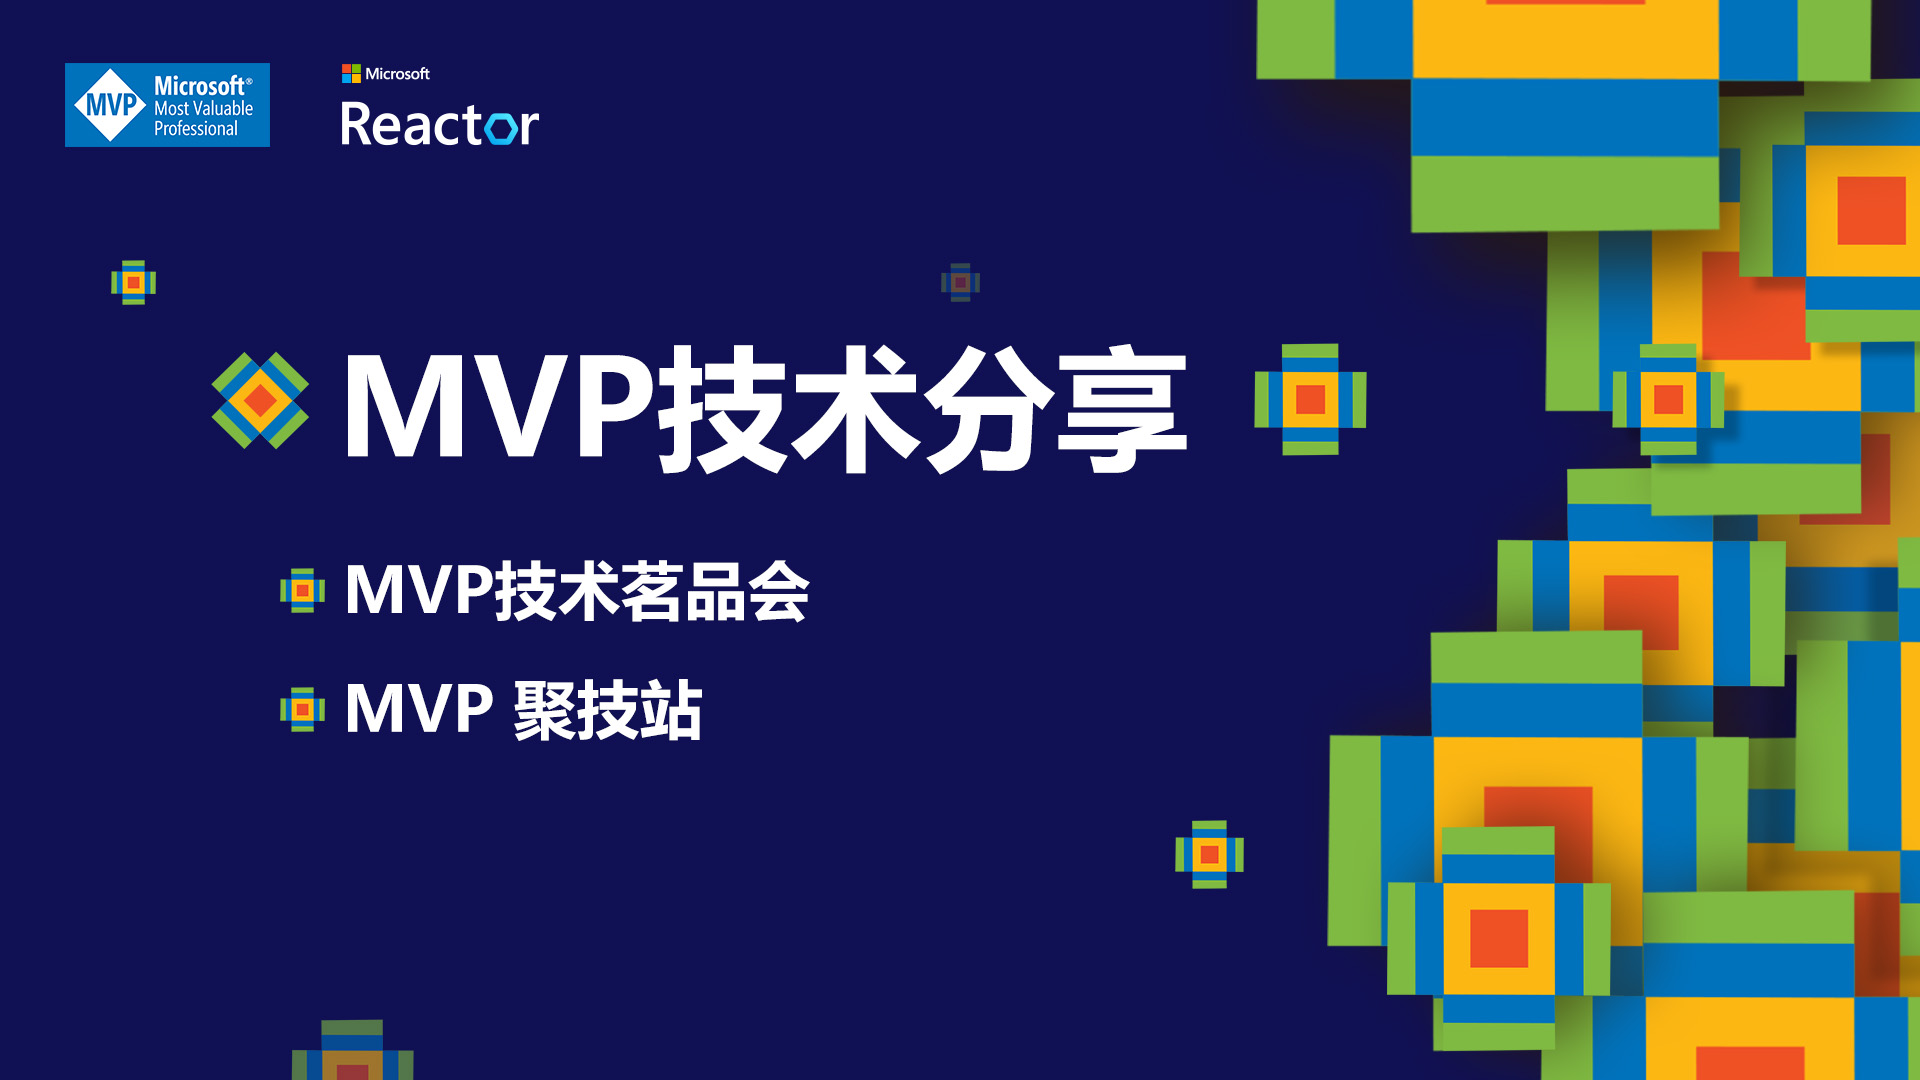 MVP技术总banner.jpg